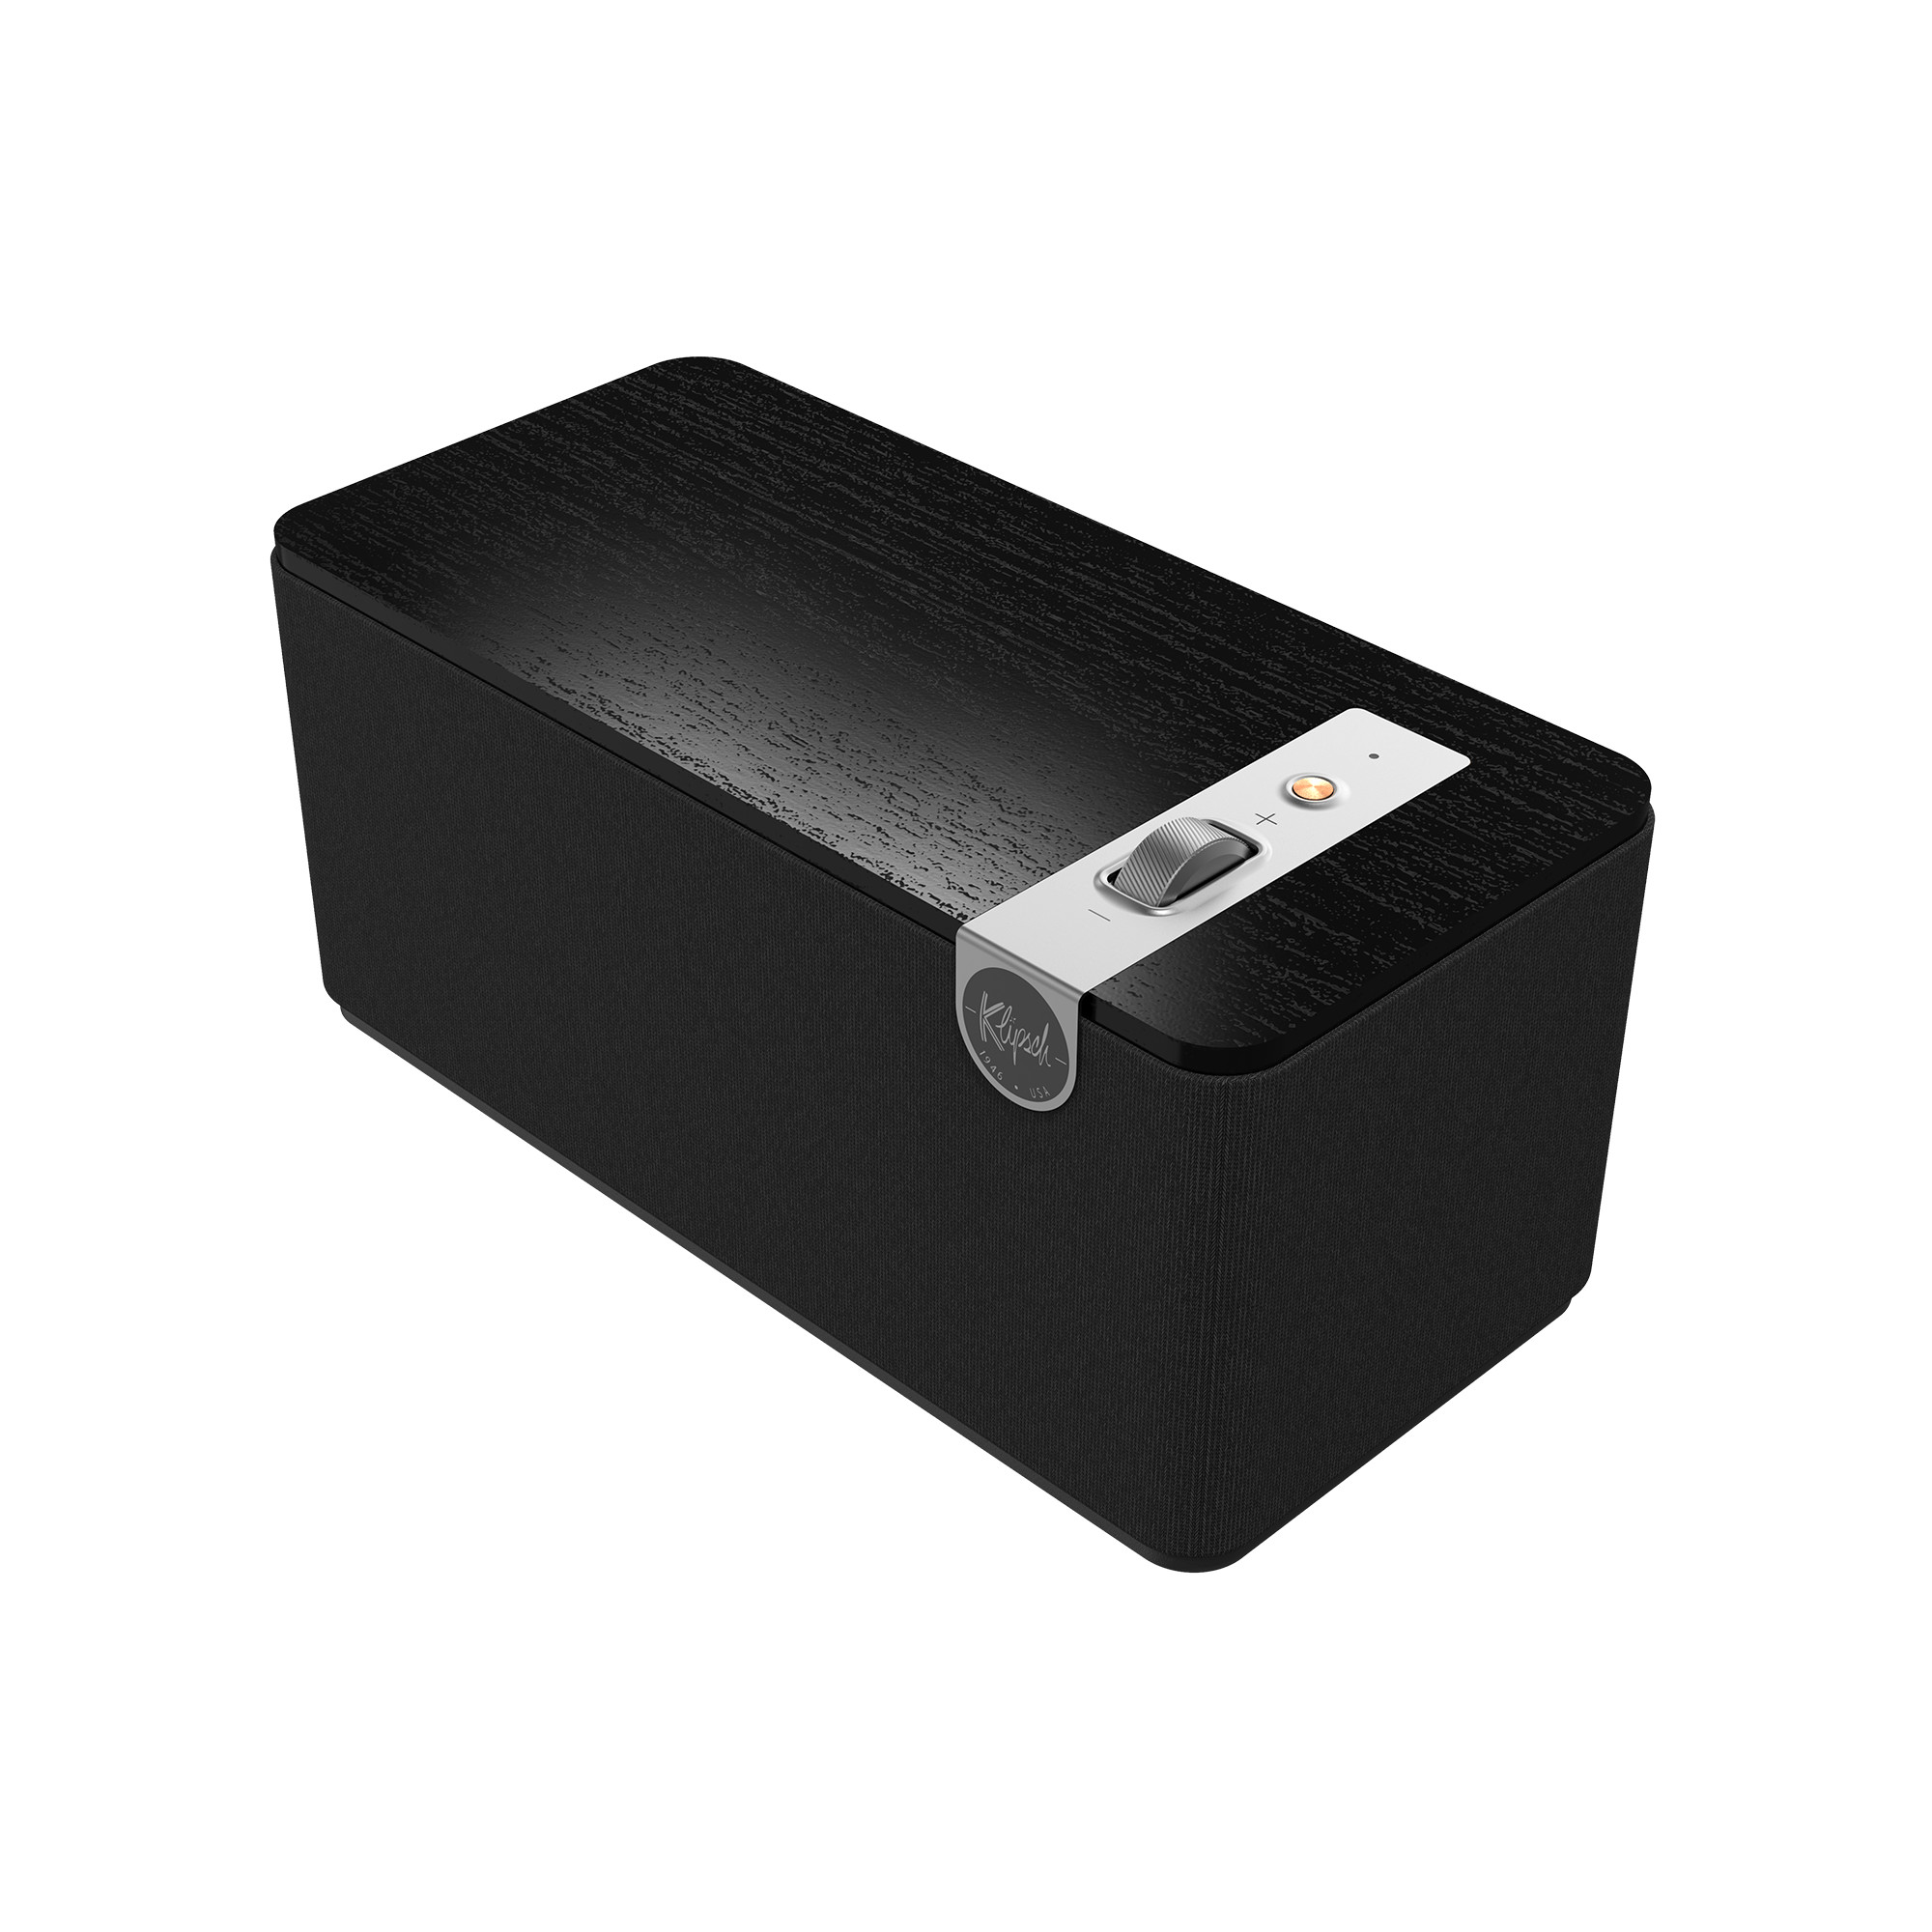 Klipsch-The-One-Plus-Bluetooth-Lautsprecher-3-Generation-matt-schwarz